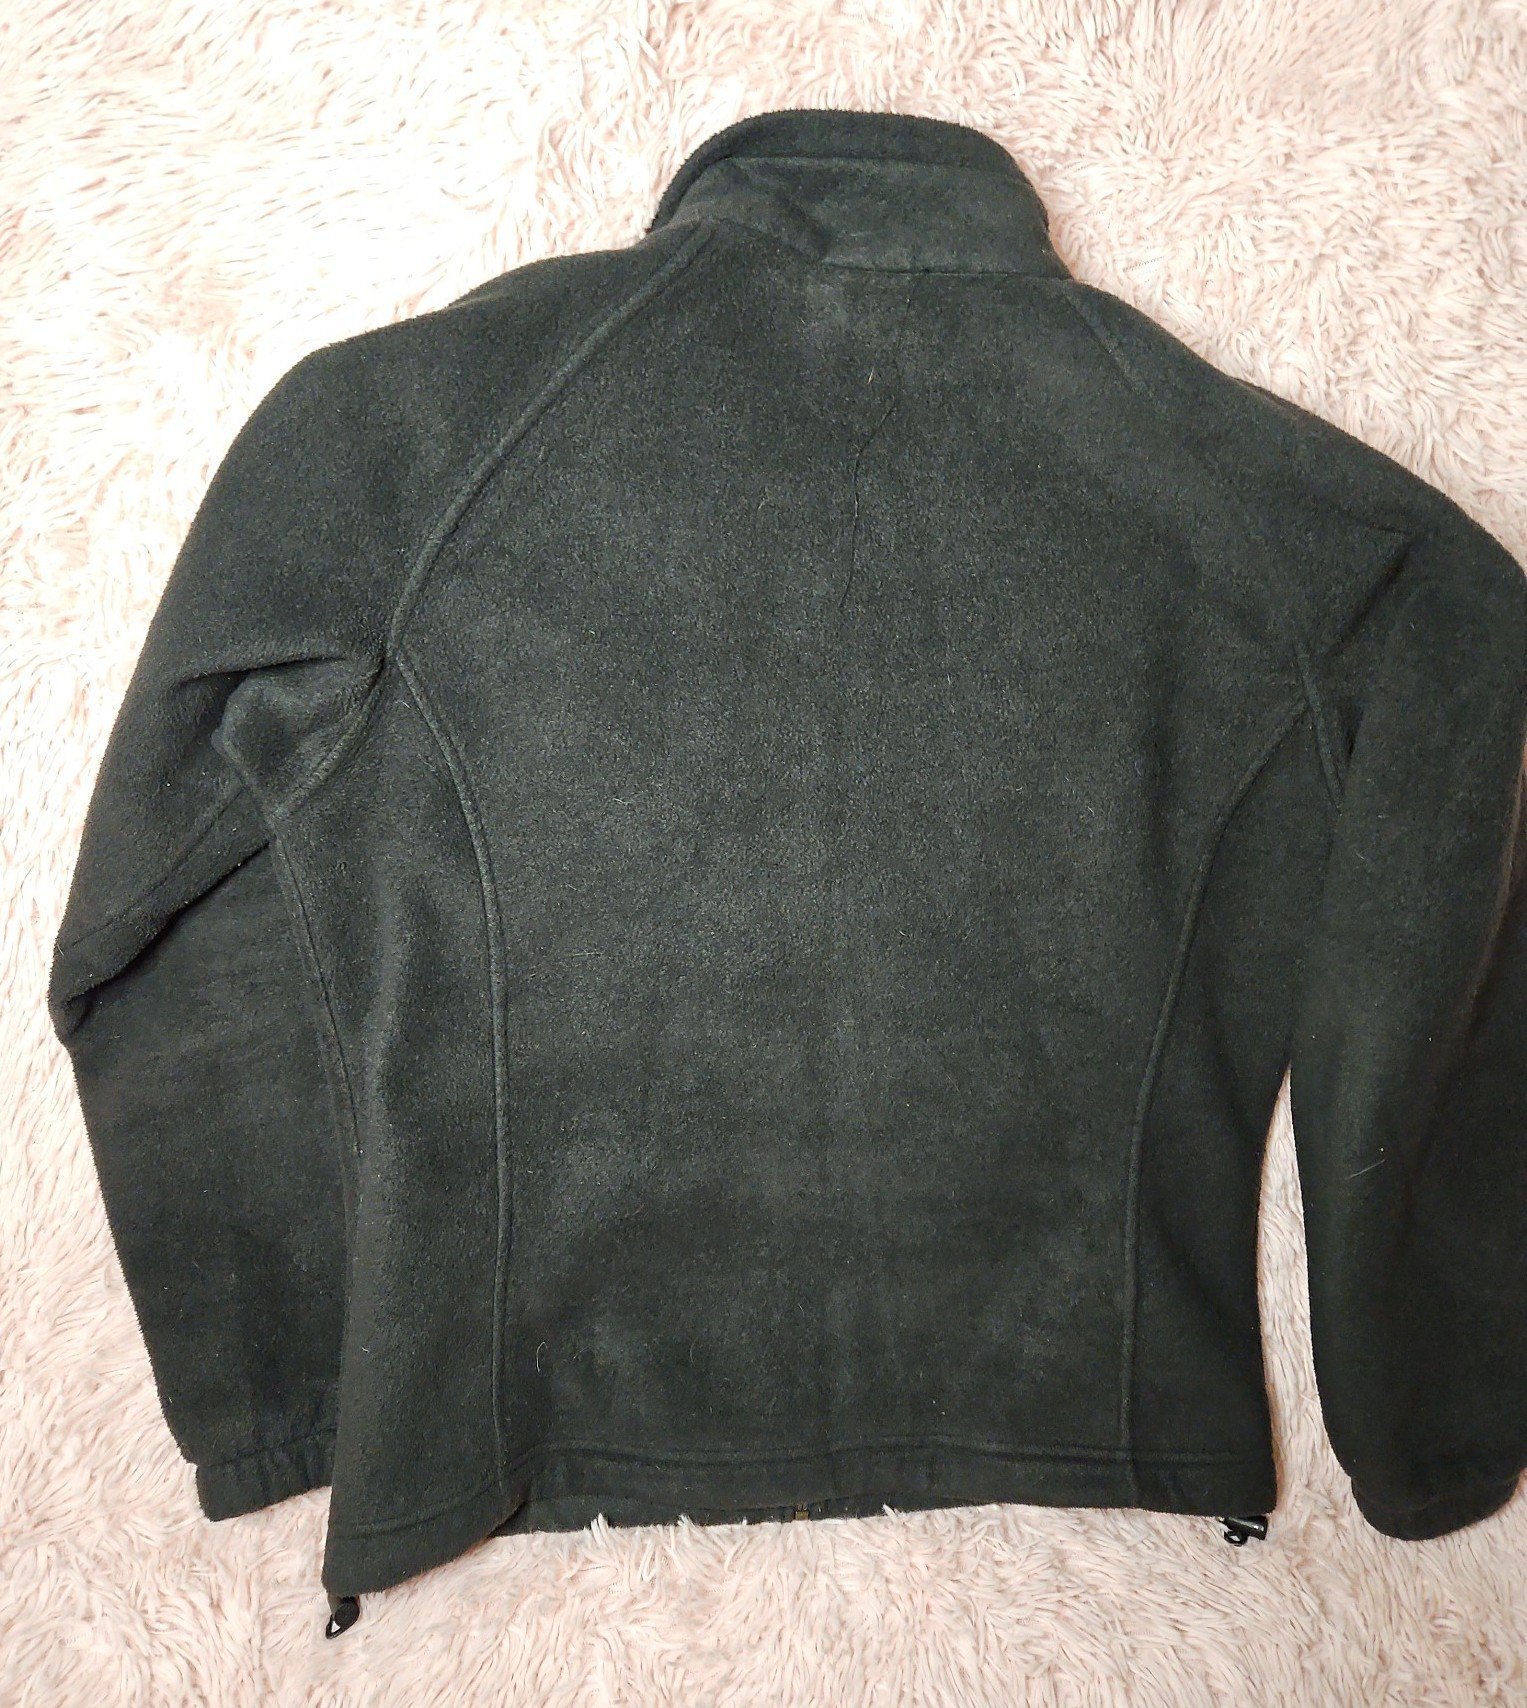 Nice Columbia fleece jacket kwsxe7hM1 Store Online